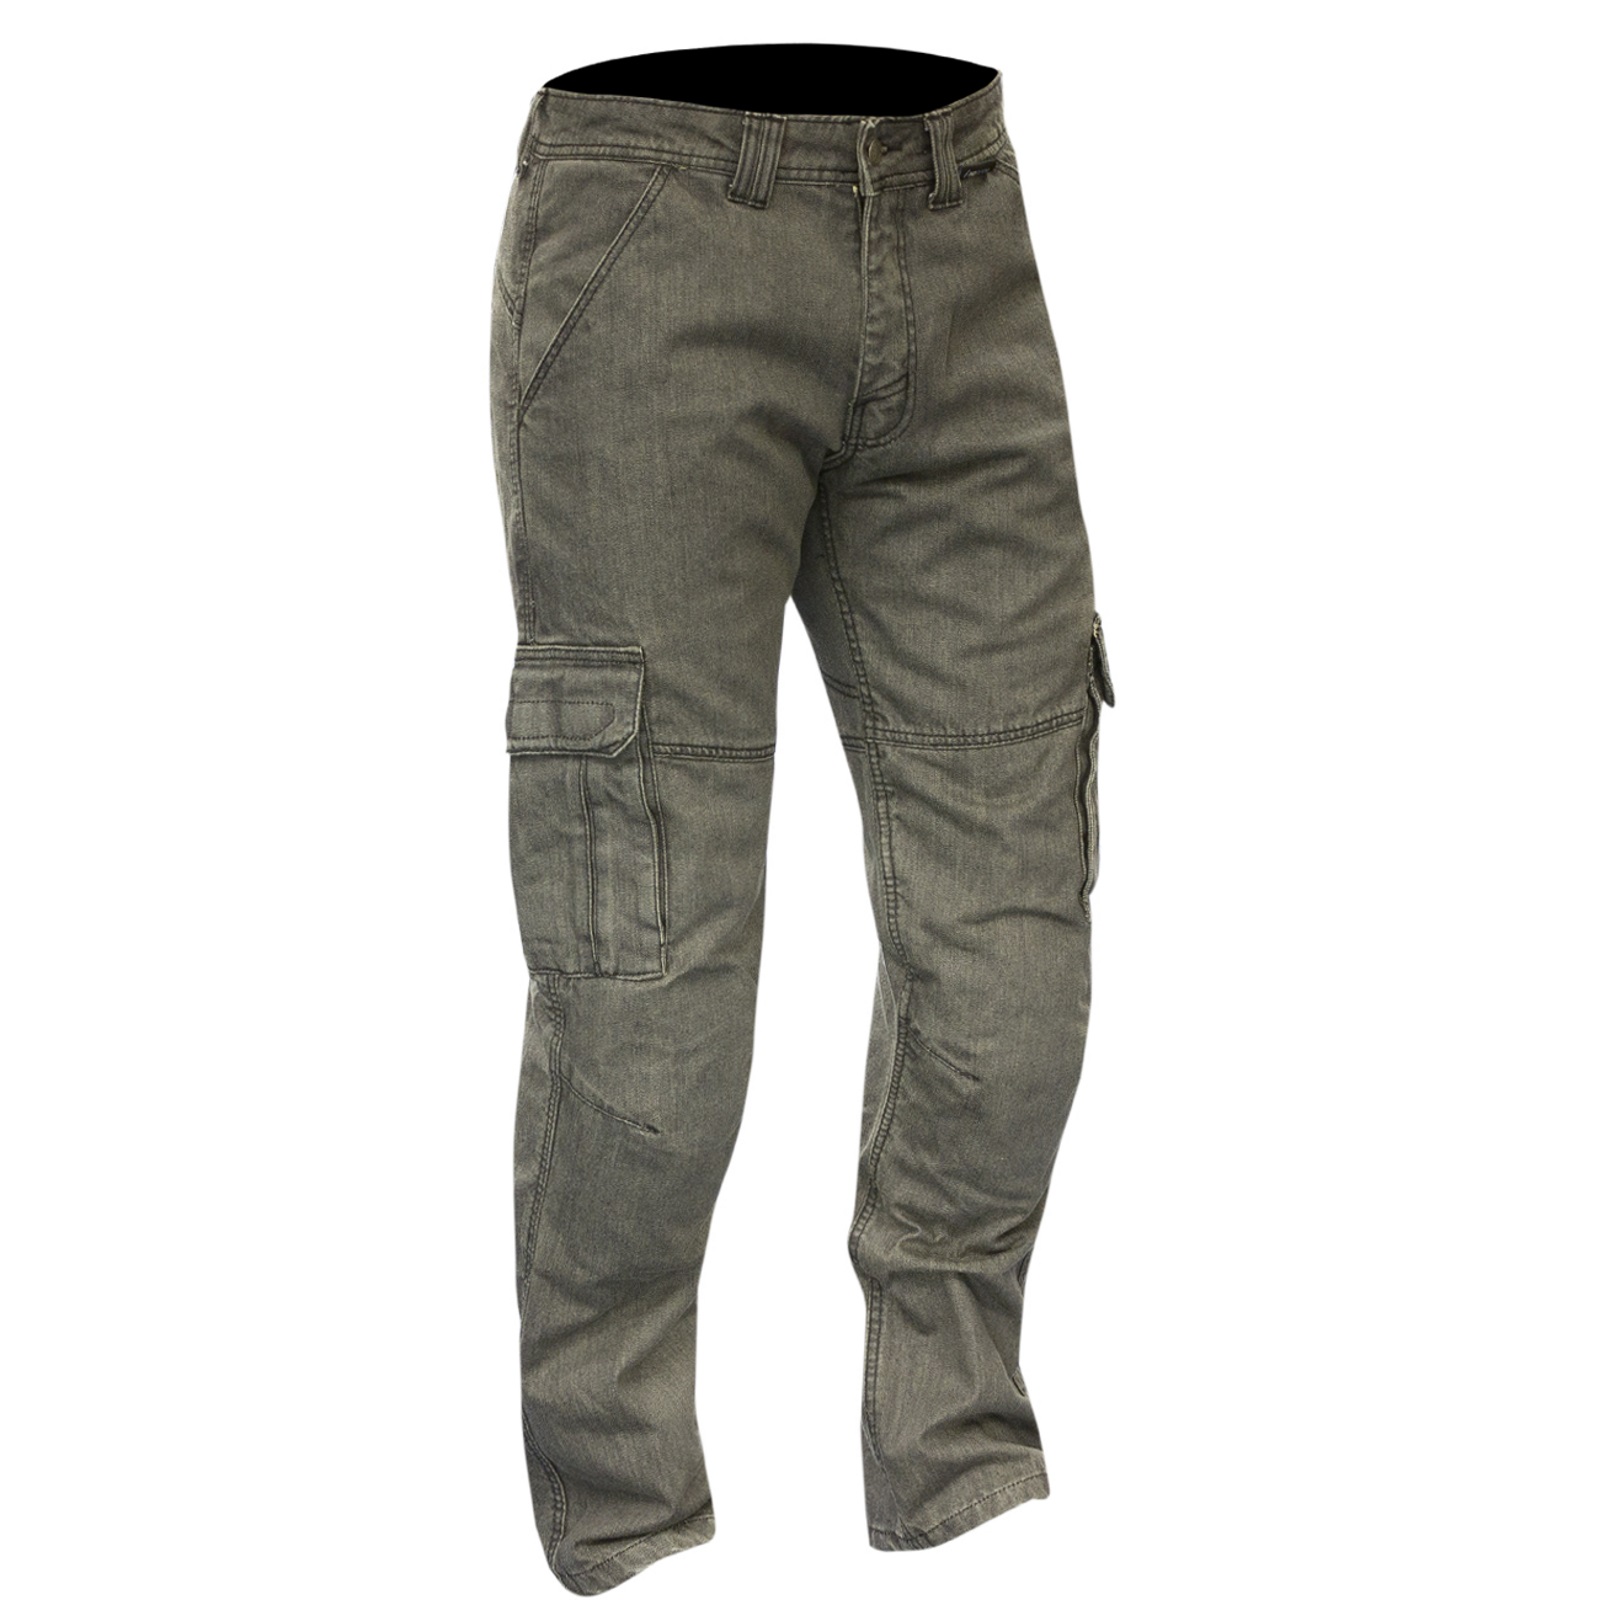 Cargo Apache kevlar trousers - Motoutlet